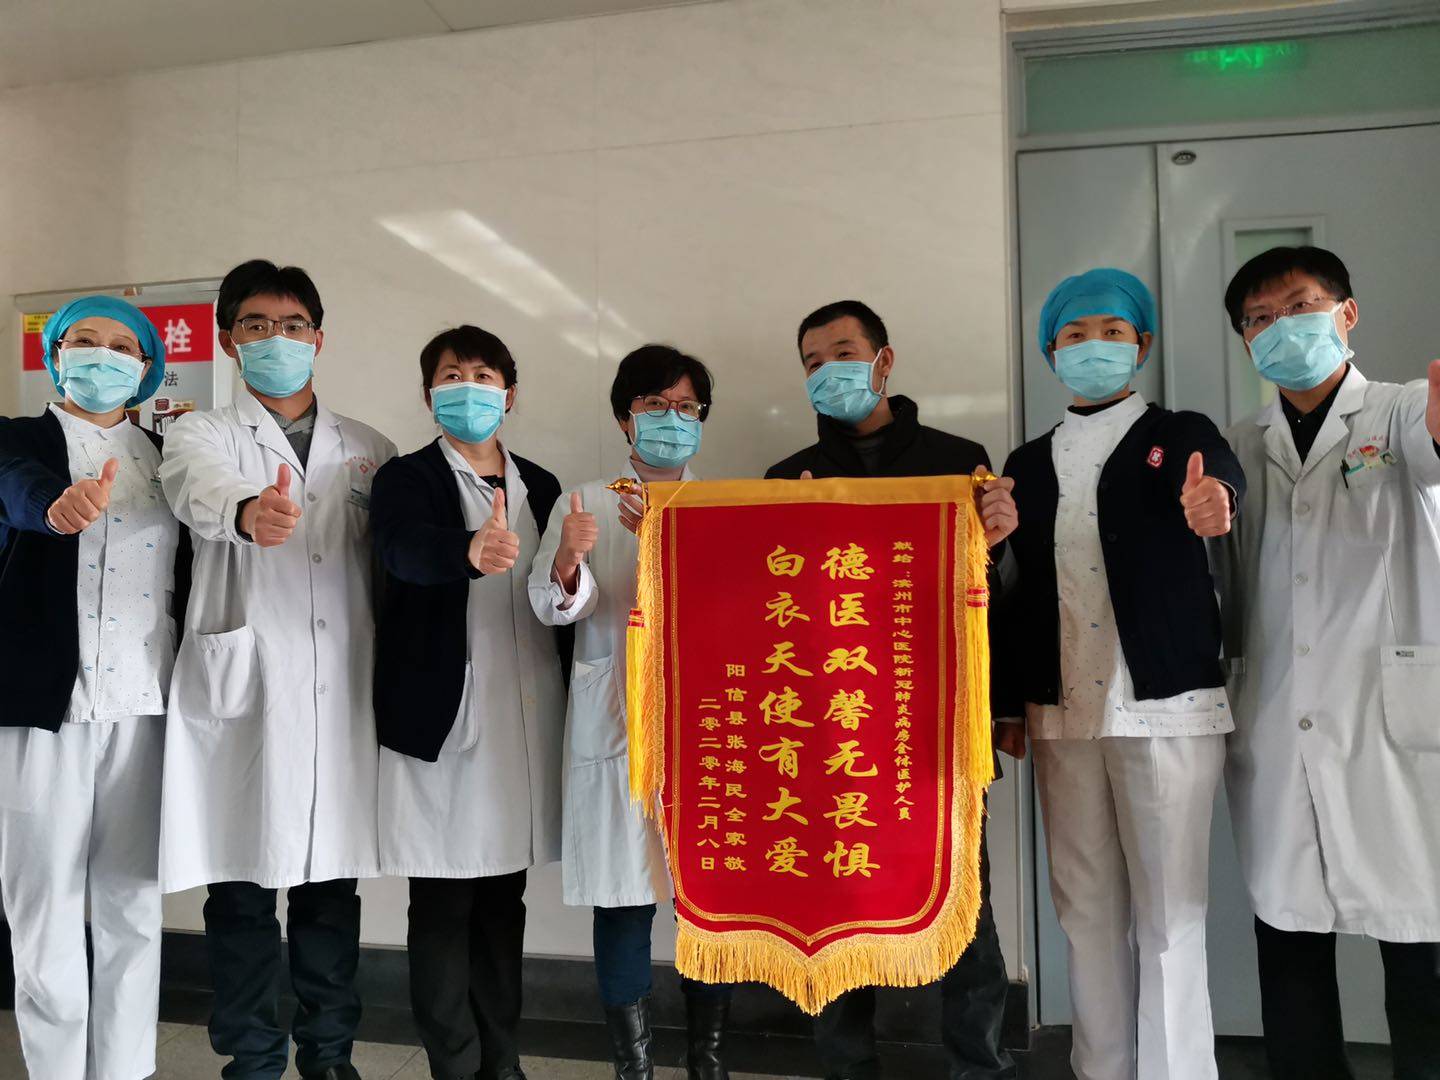 滨州市新冠肺炎患者累计出院4例  今日阳信唯一一例正式出院